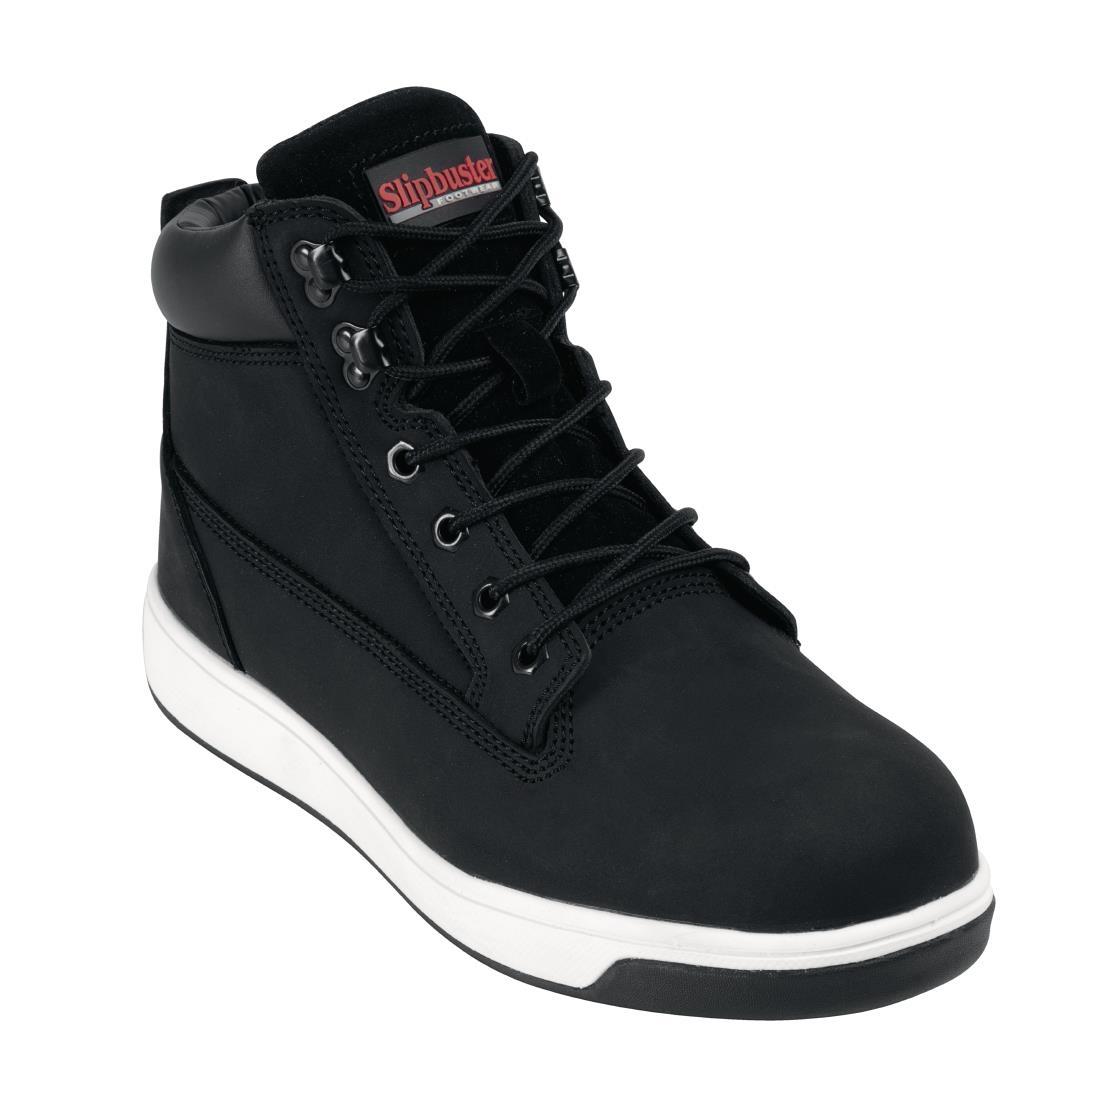 Slipbuster Sneaker Boots Black 37 - BB422-37  - 1